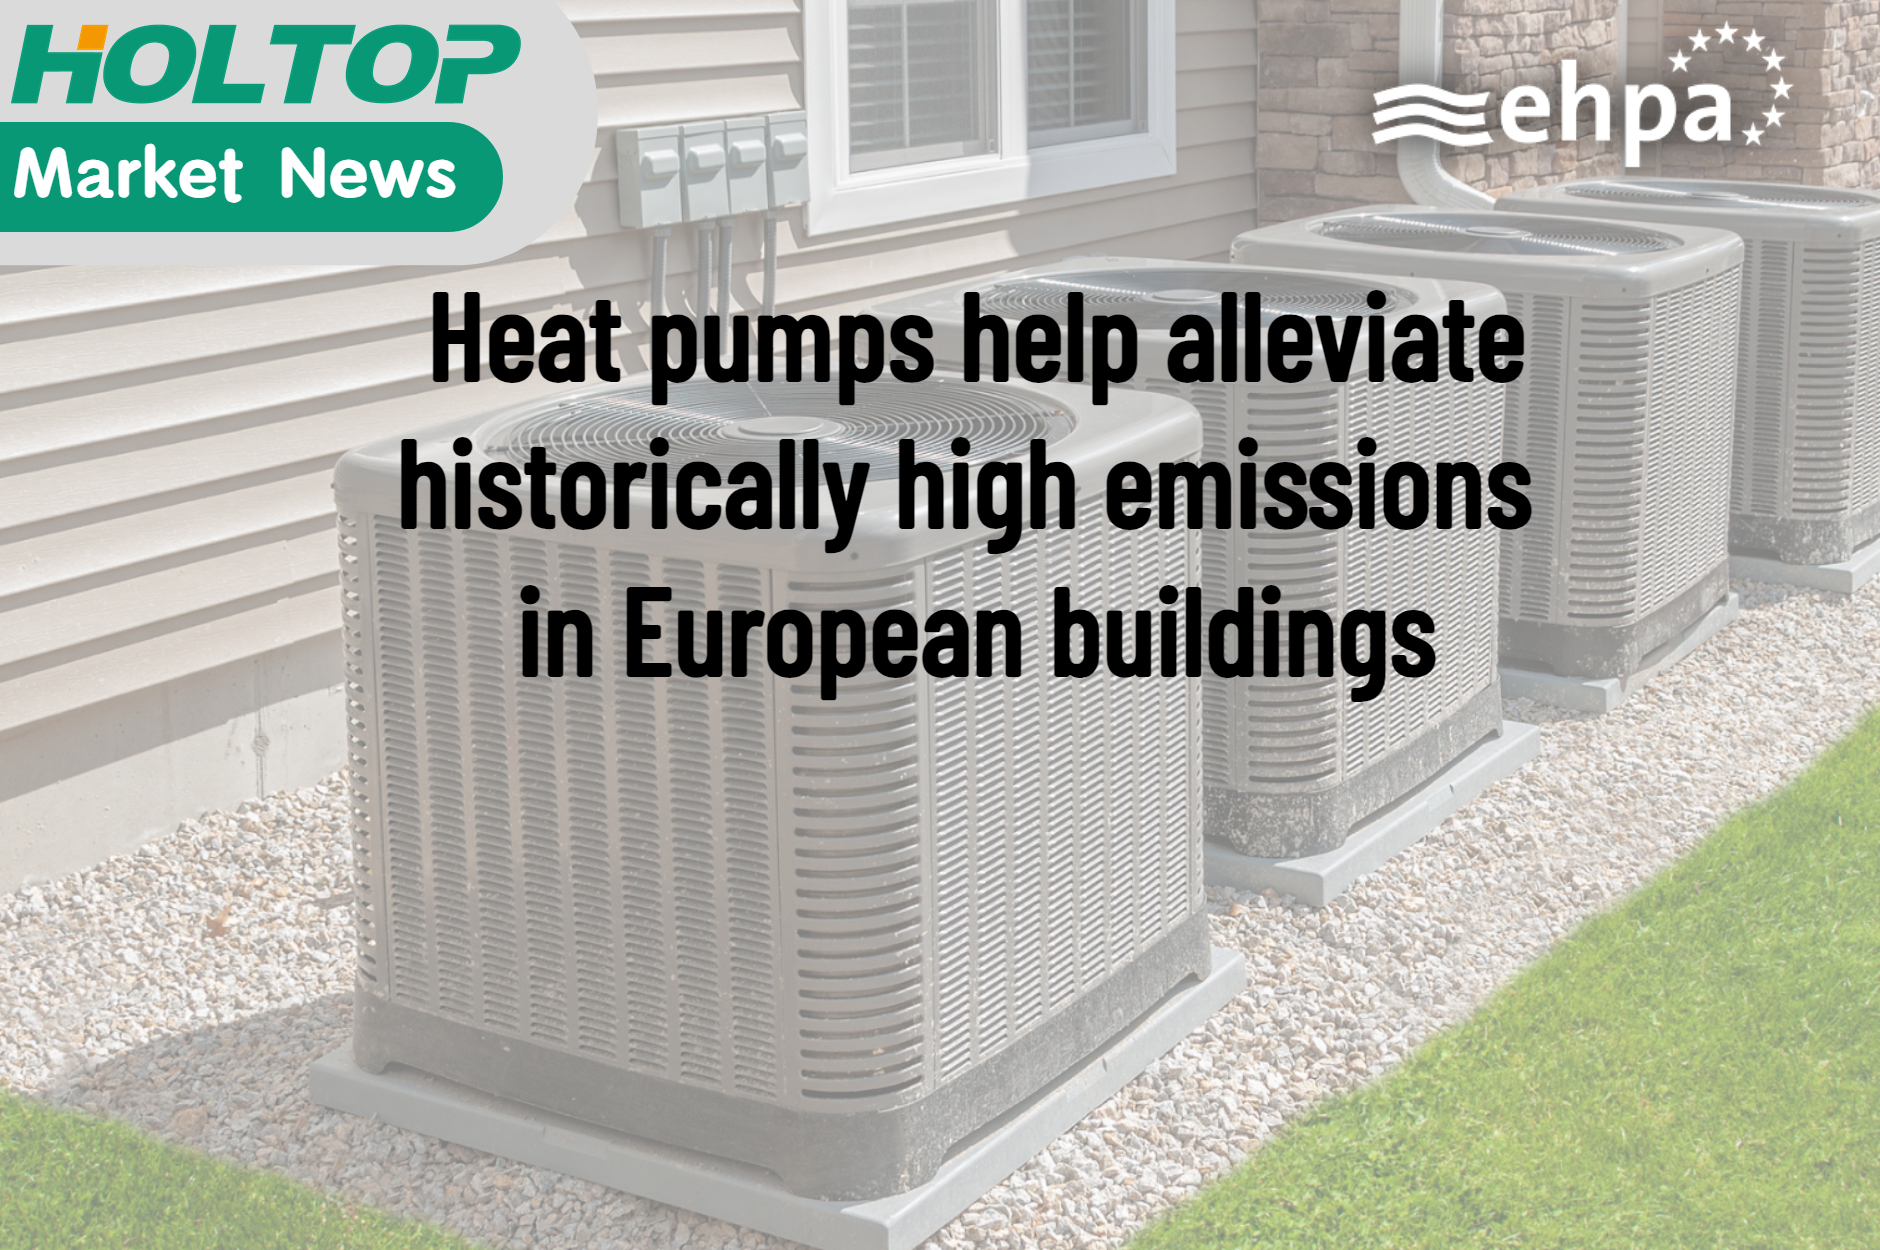 Las bombas de calor ayudan a aliviar las emisiones históricamente altas en los edificios europeos